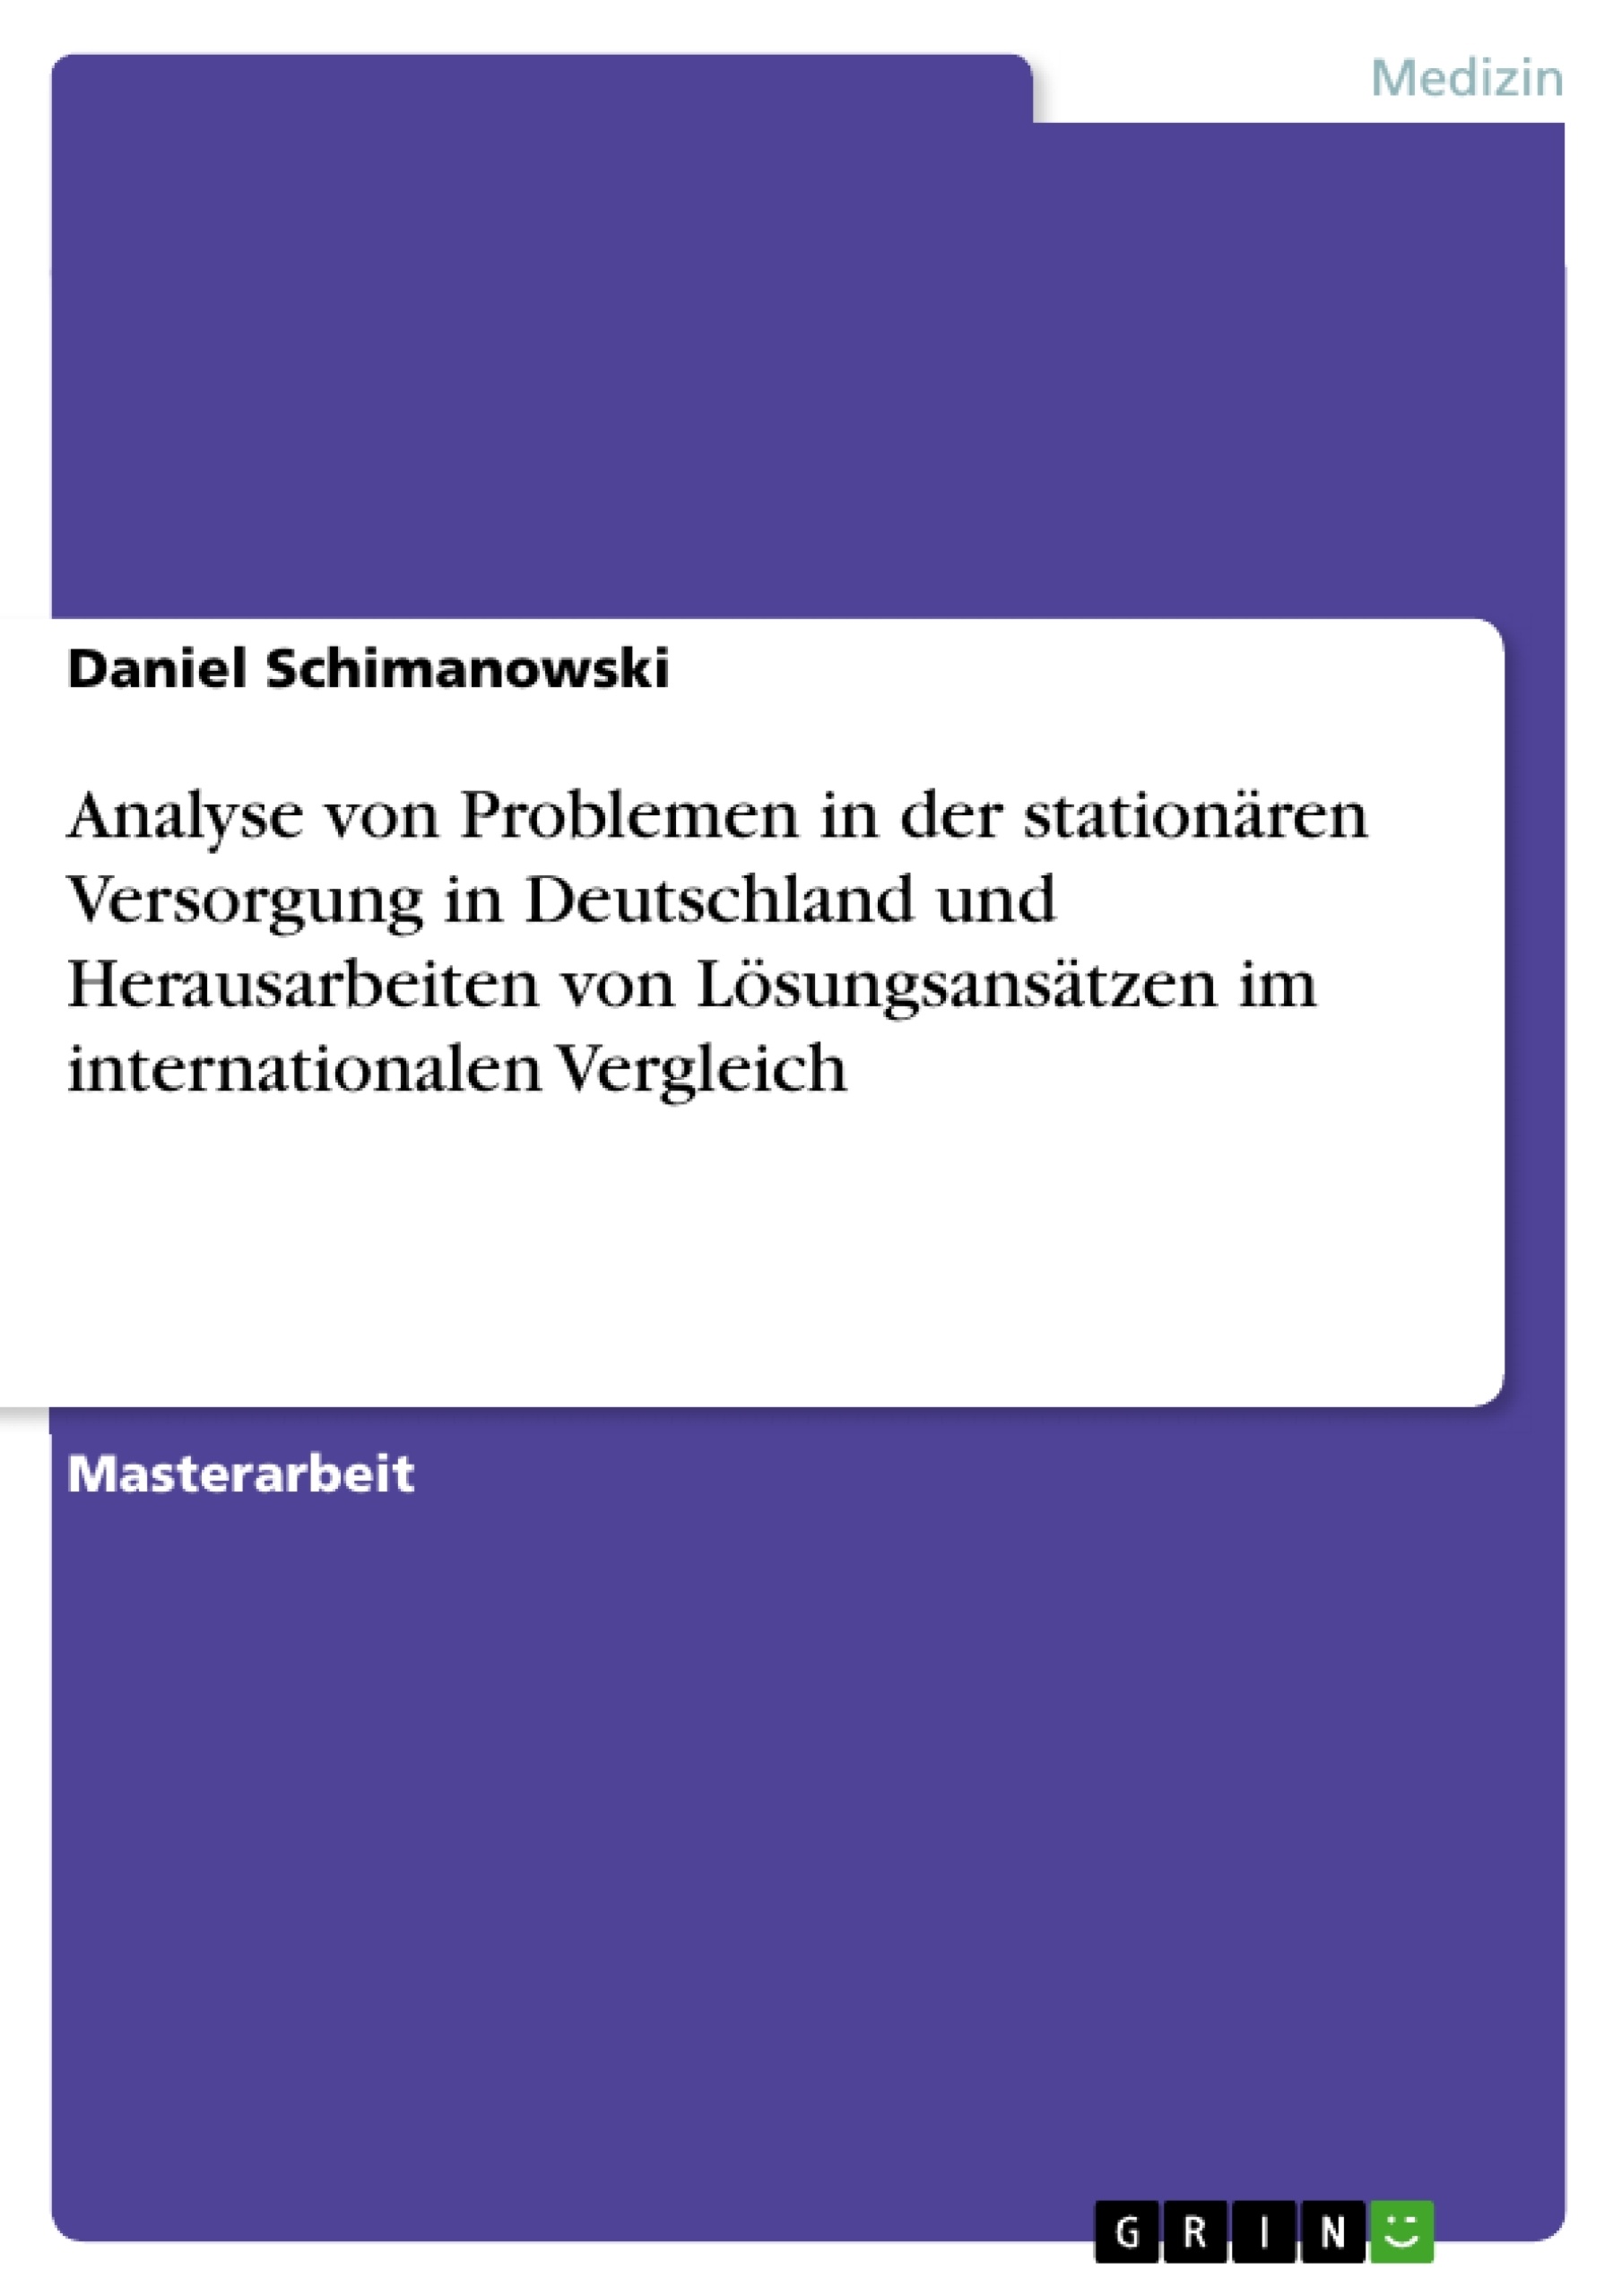 Titre: Analyse von Problemen in der stationären Versorgung in Deutschland und Herausarbeiten von Lösungsansätzen im internationalen Vergleich